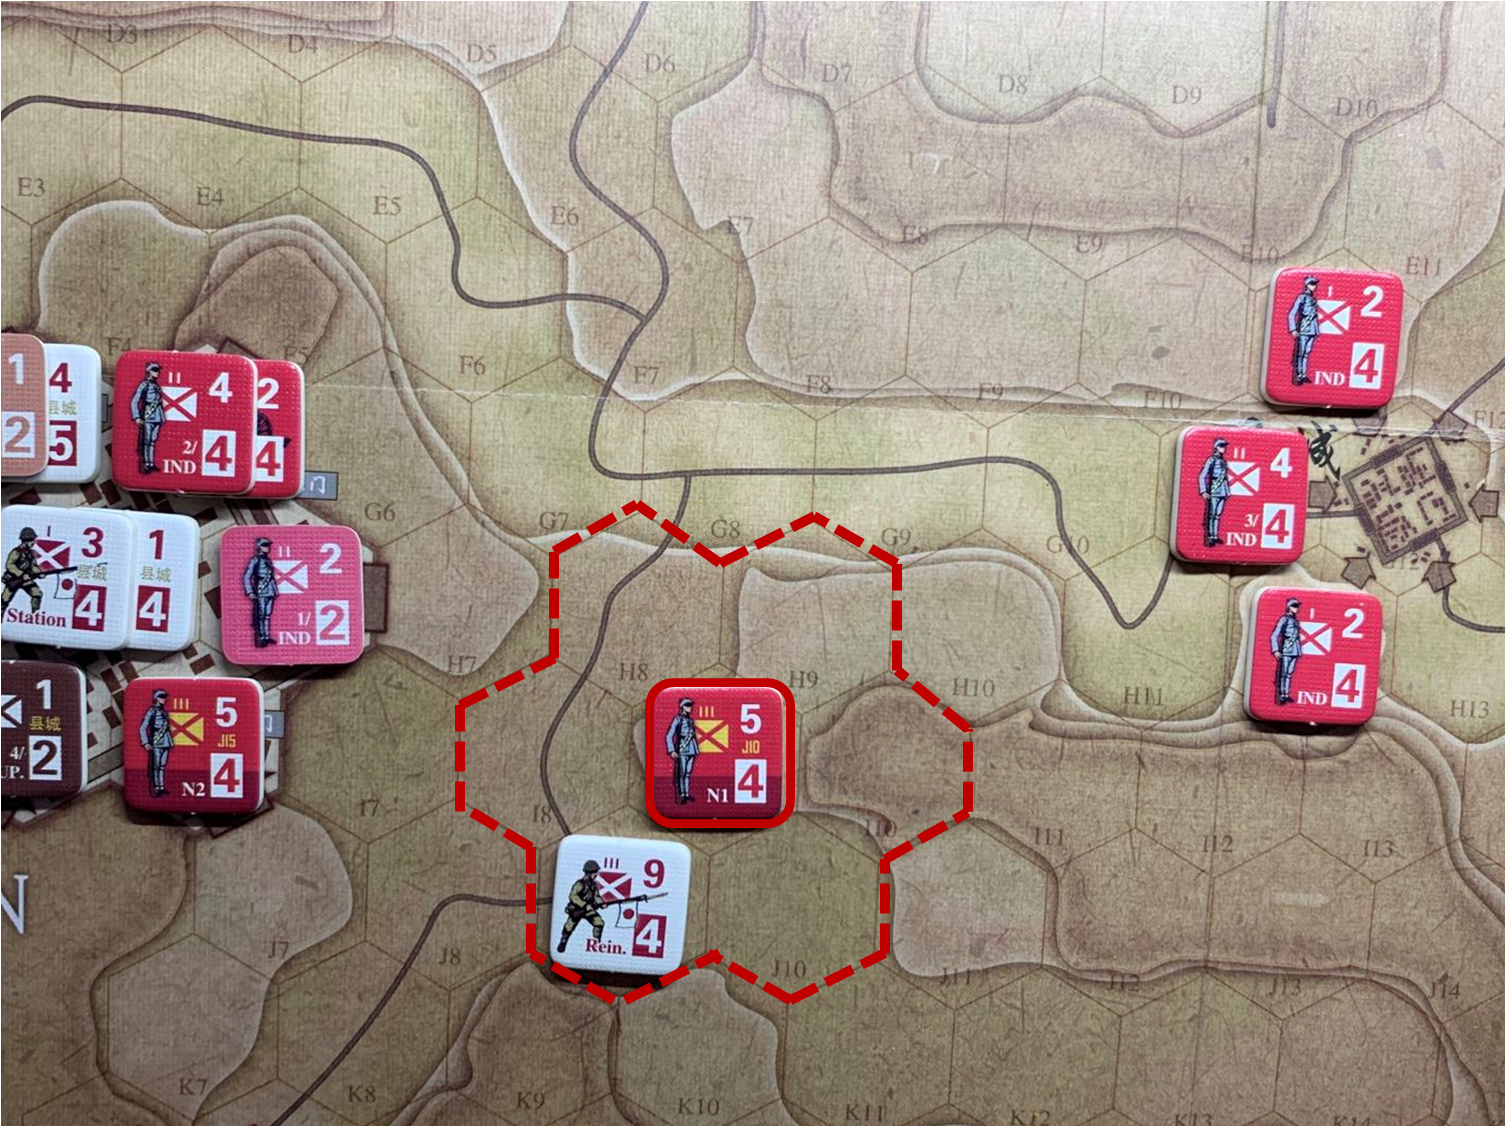 第二回合共军正规军部队N1对于移动命令5的执行计划与结果，及该部队控制区的覆盖范围